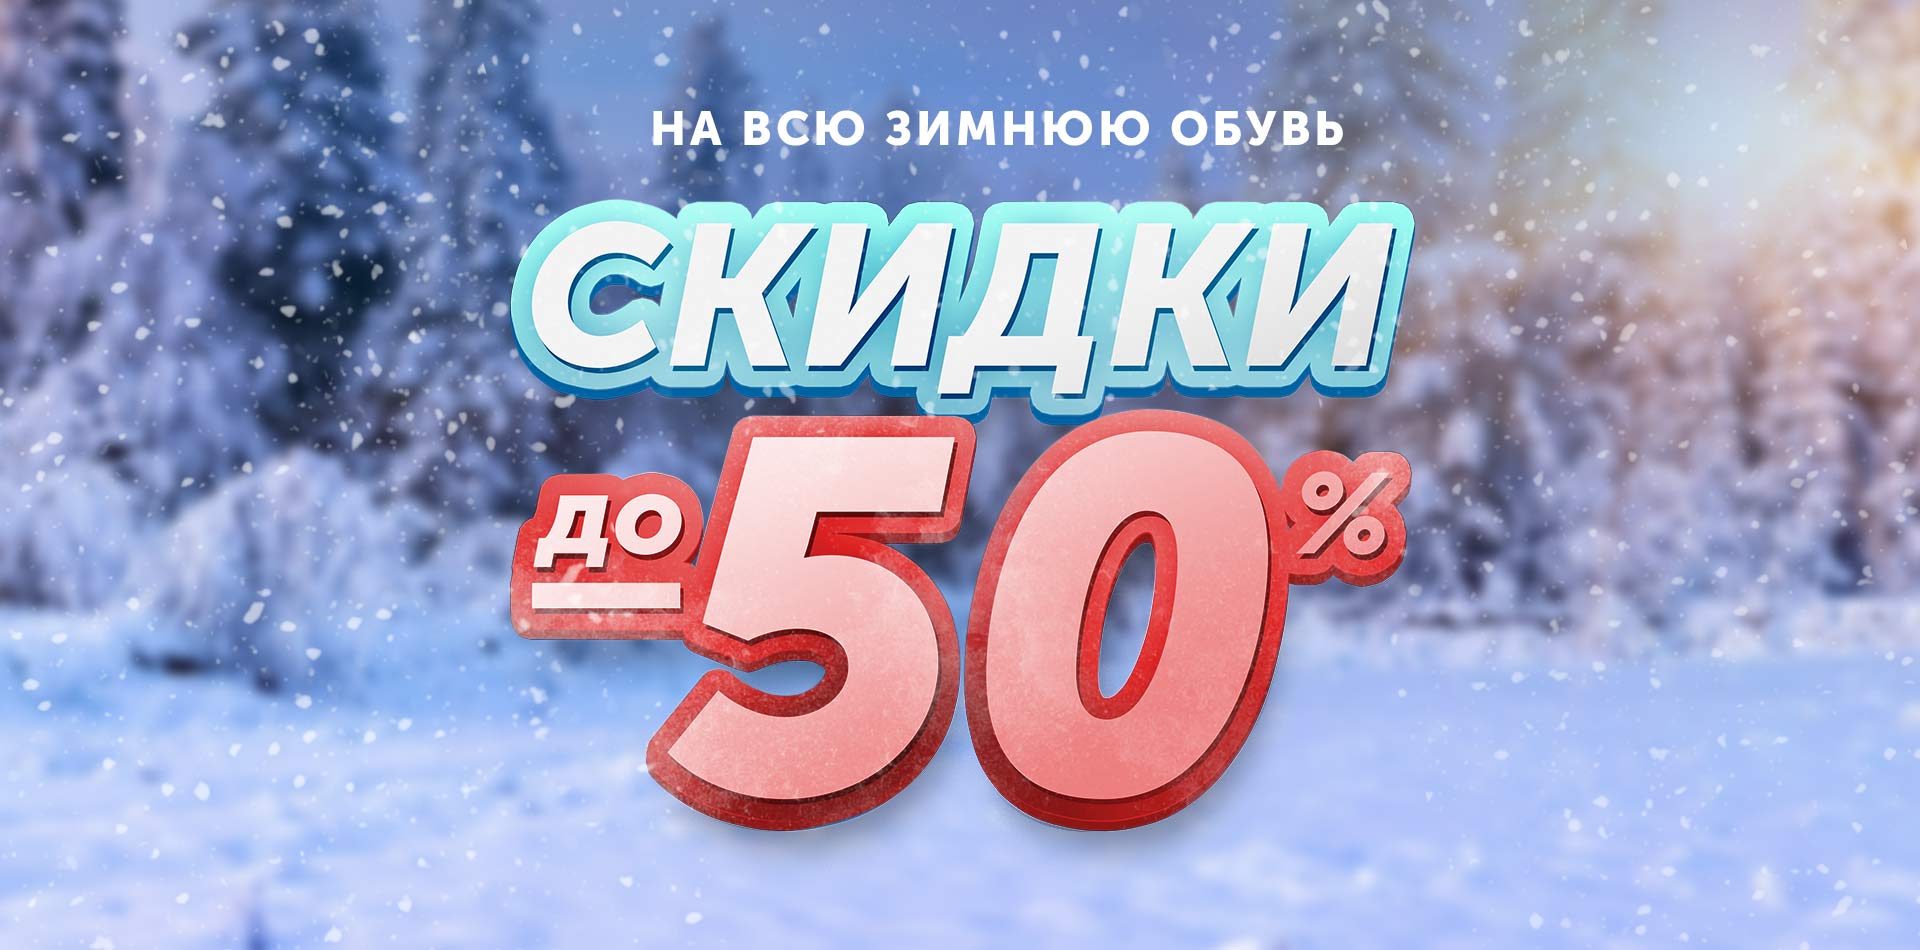 Скидки 50% зима